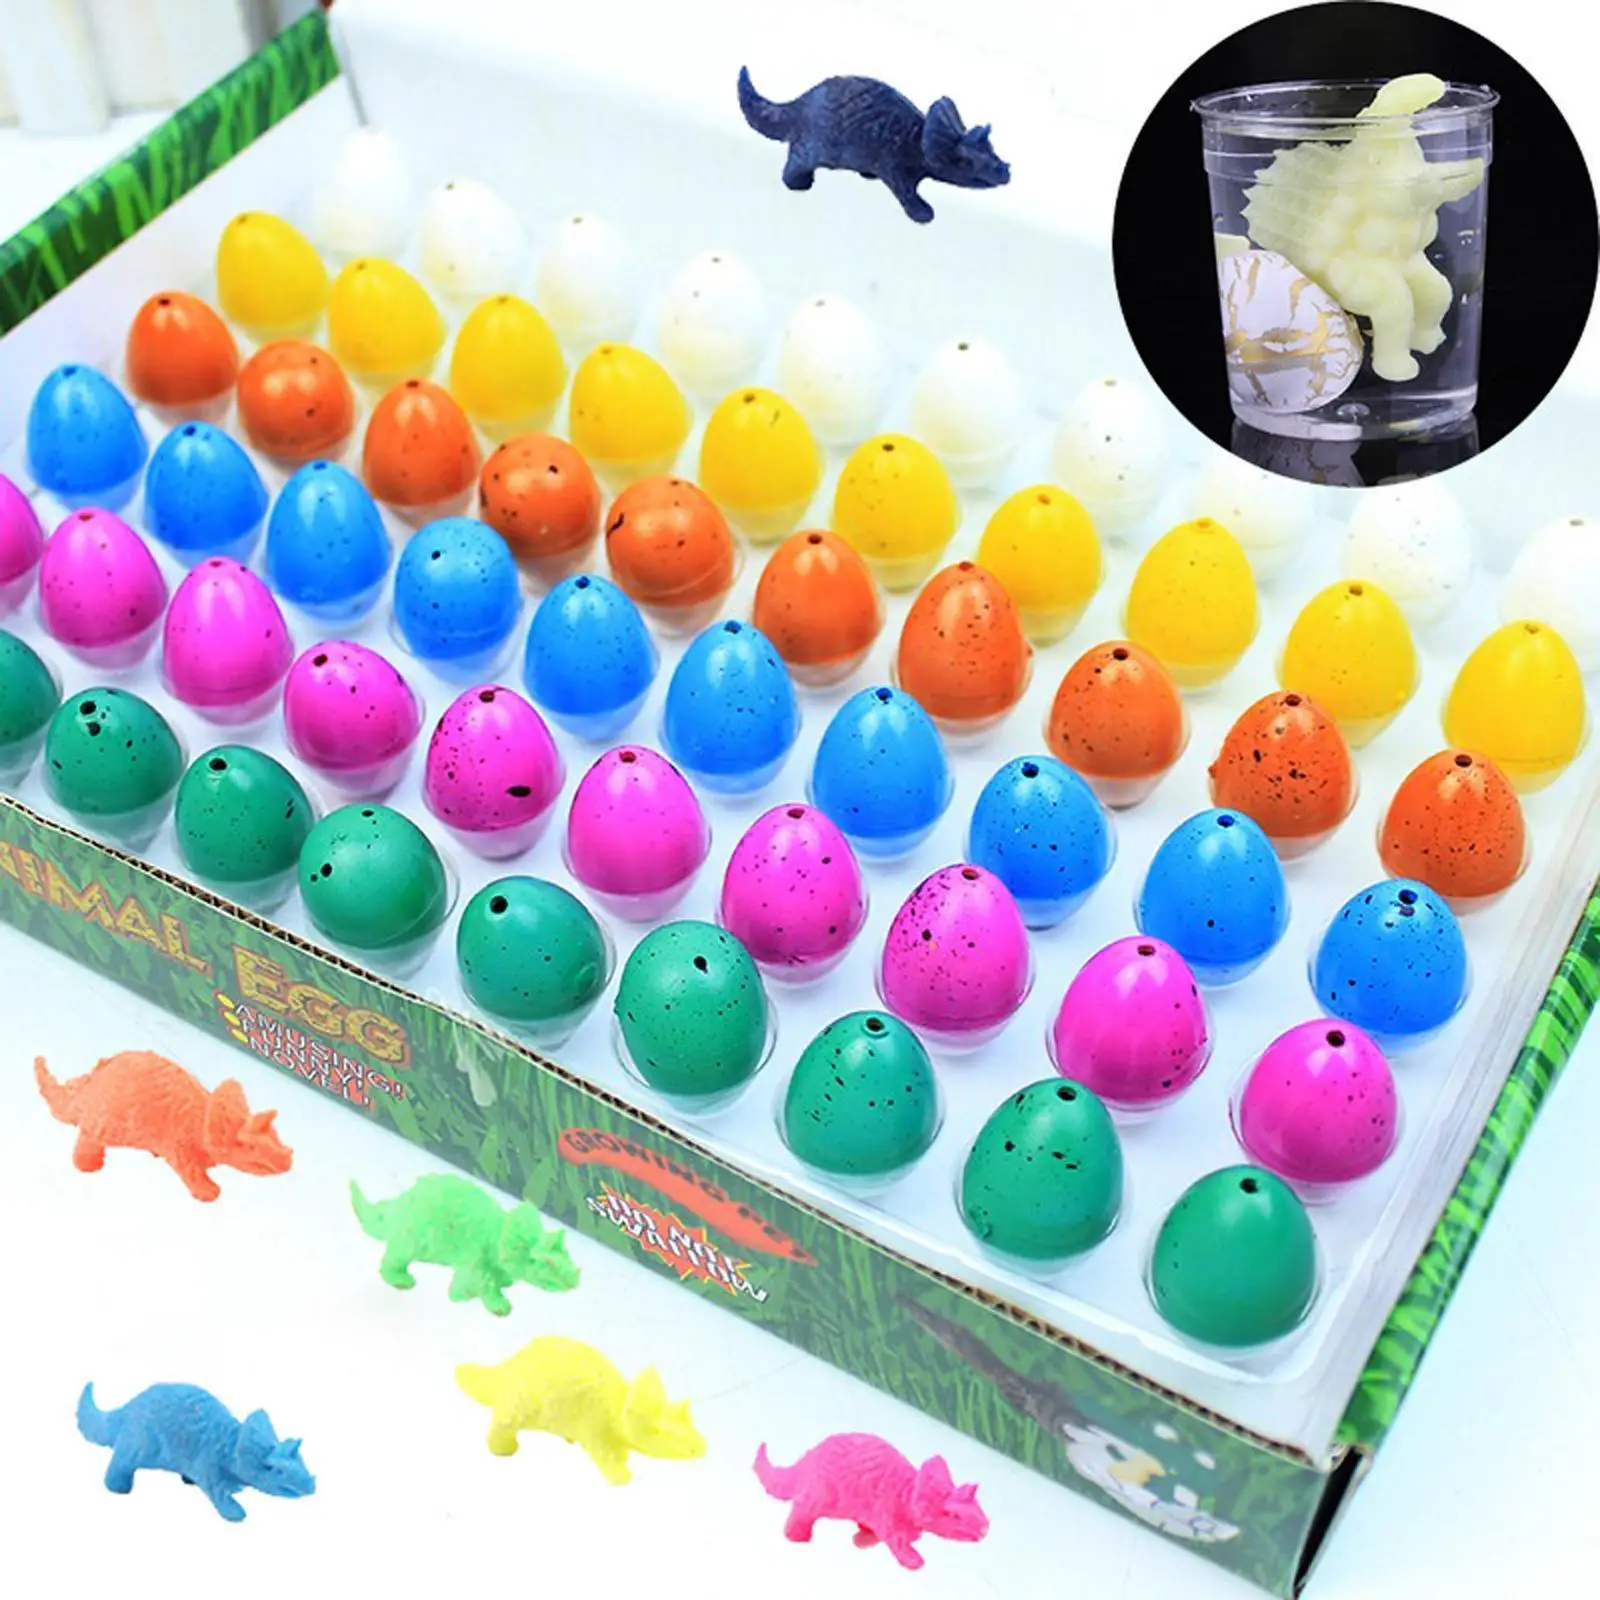 

10 шт. яйцо динозавра, новинка, волшебные яйца, растущие игрушки для вылупивания, Яйца динозавра, водное яйцо, Образовательное детское яйцо V8j5